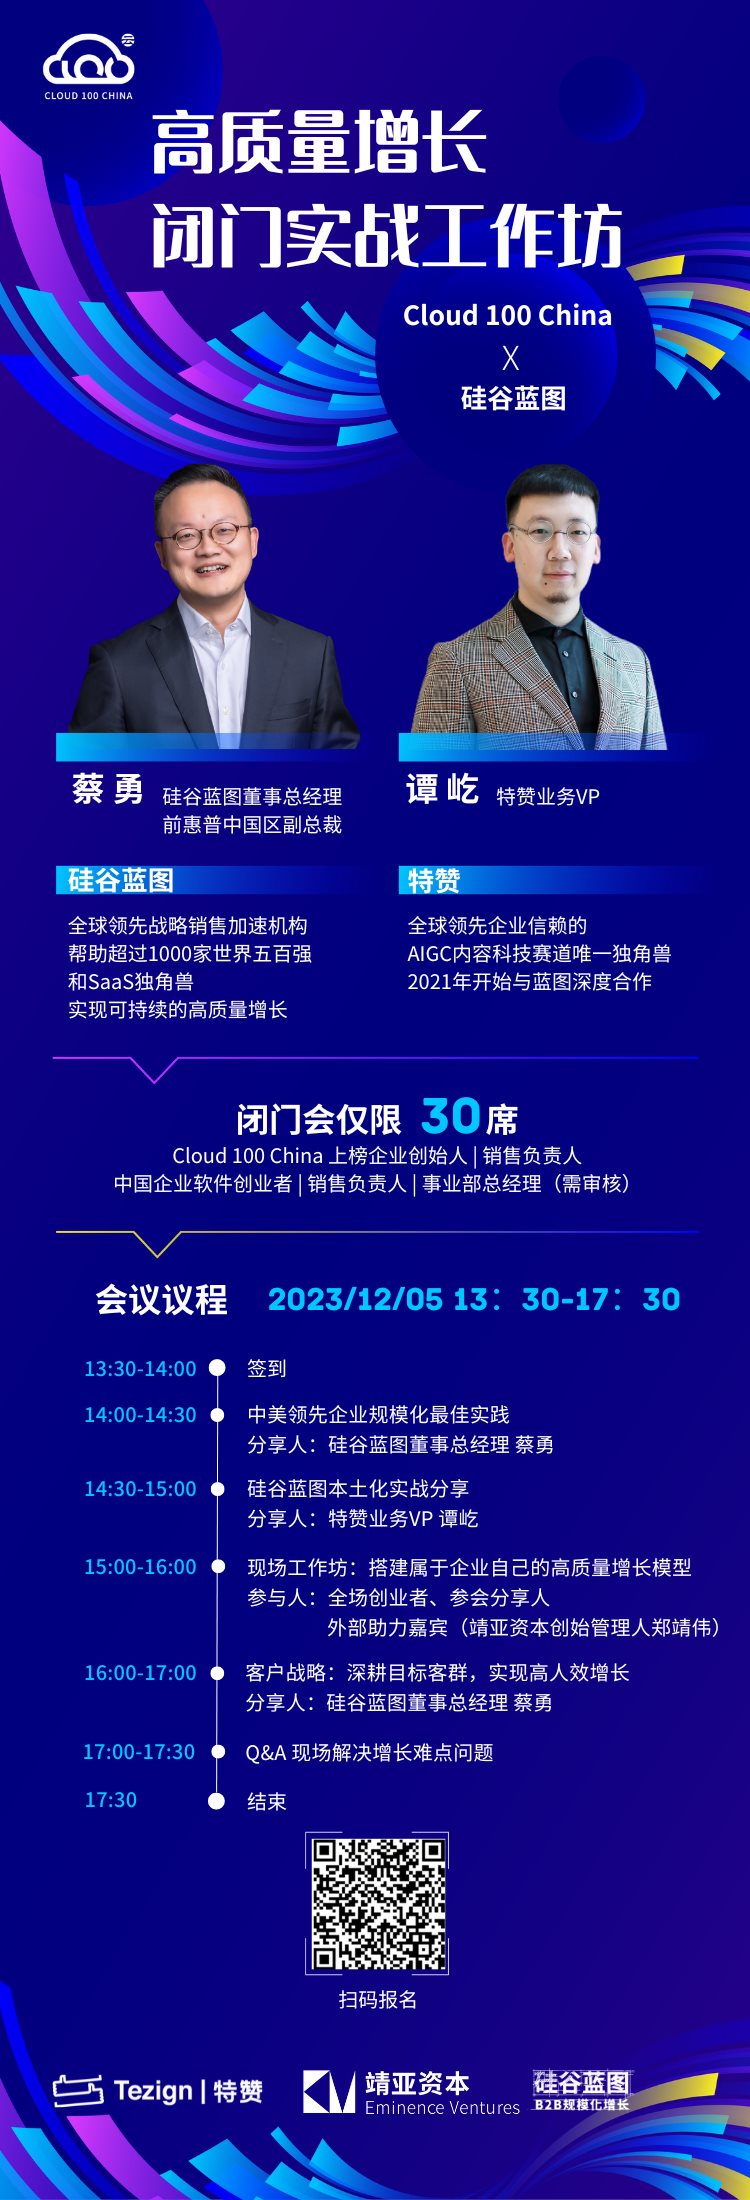 Cloud 100 China ✖️ 硅谷蓝图海报.png